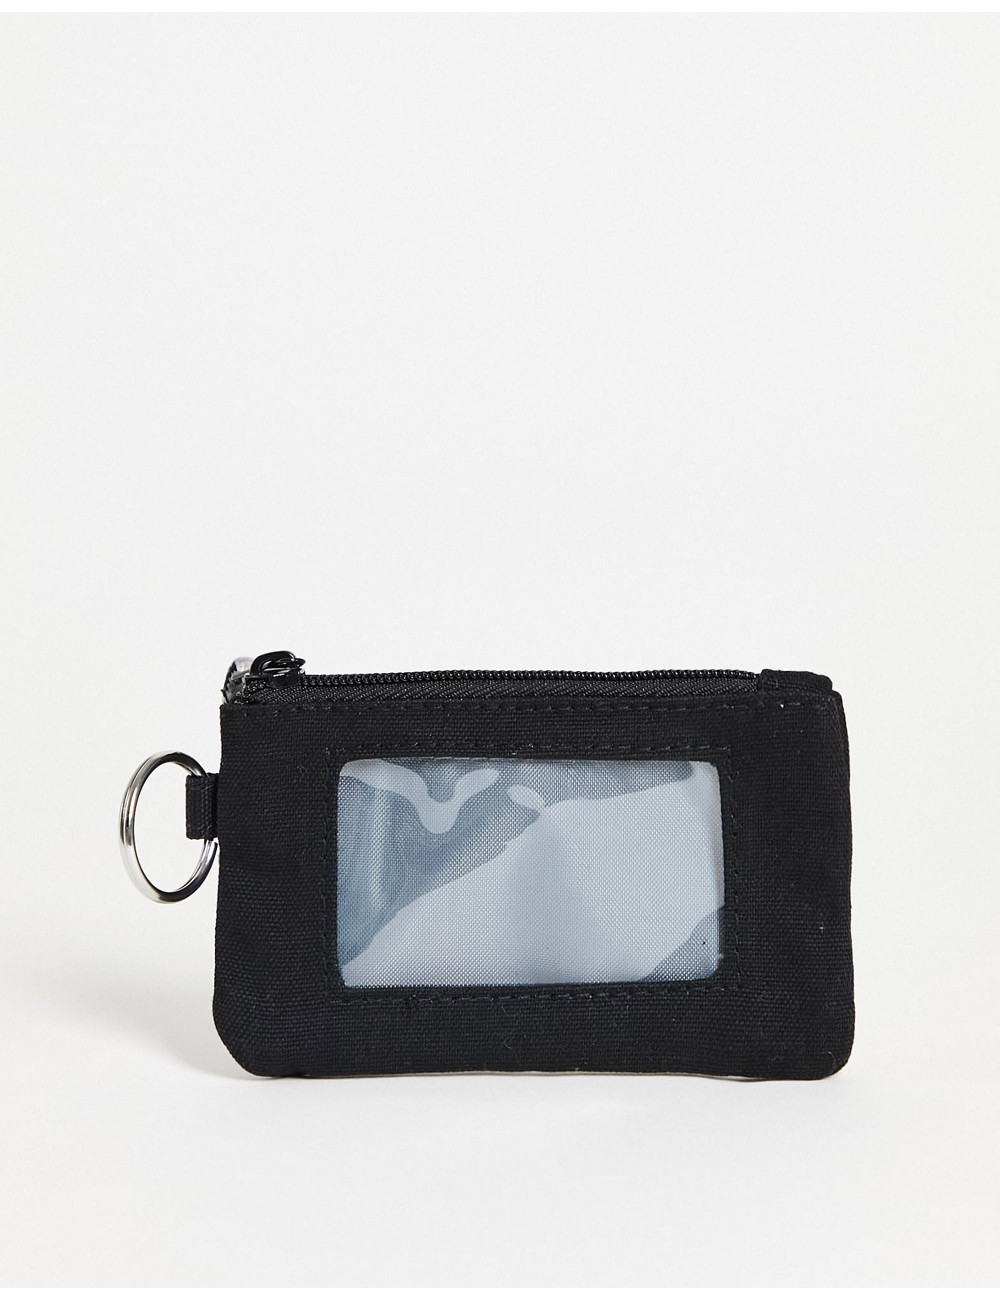 Kavu Stirling wallet in black